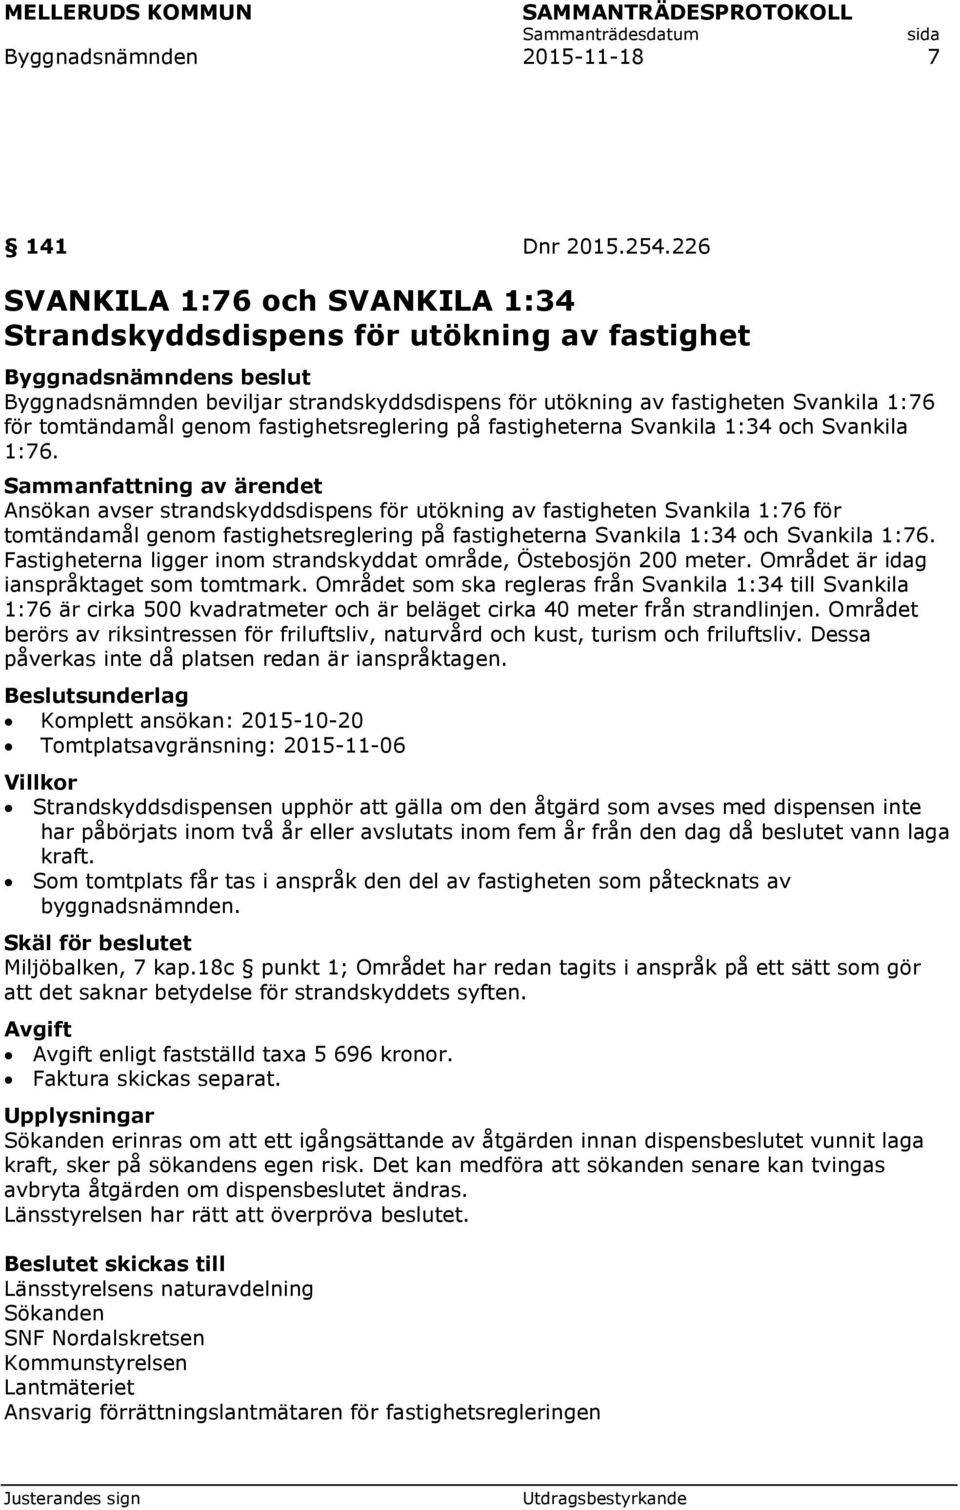 fastighetsreglering på fastigheterna Svankila 1:34 och Svankila 1:76.